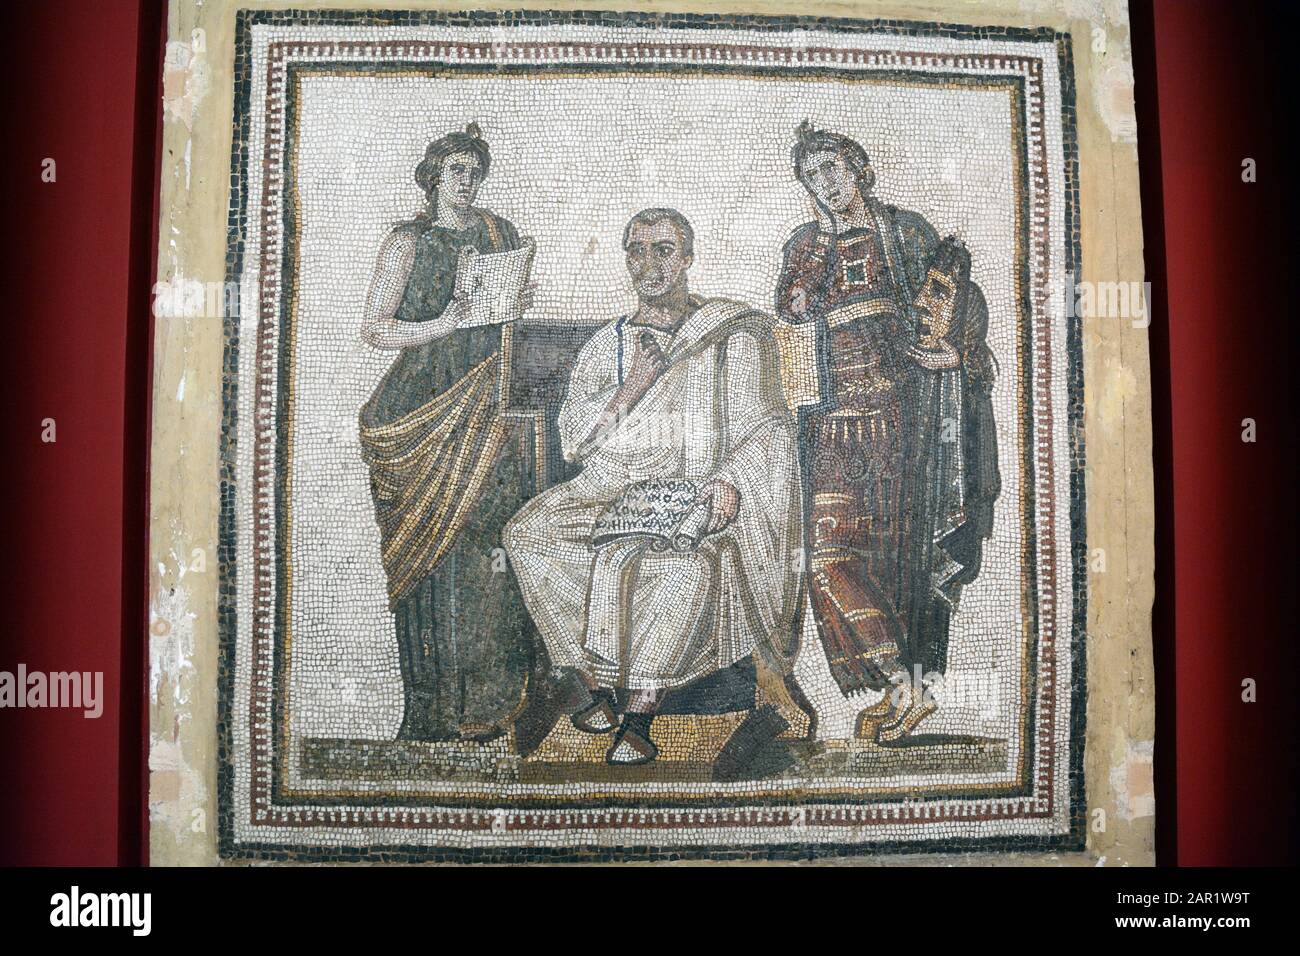 Ein römisches Mosaik des Dichters Virgil und zweier Musen Calliope und Polymnia, das im Hadrumetum ausgestellt im Bardo National Museum, Tunis, Tunesia, gefunden wurde. Stockfoto